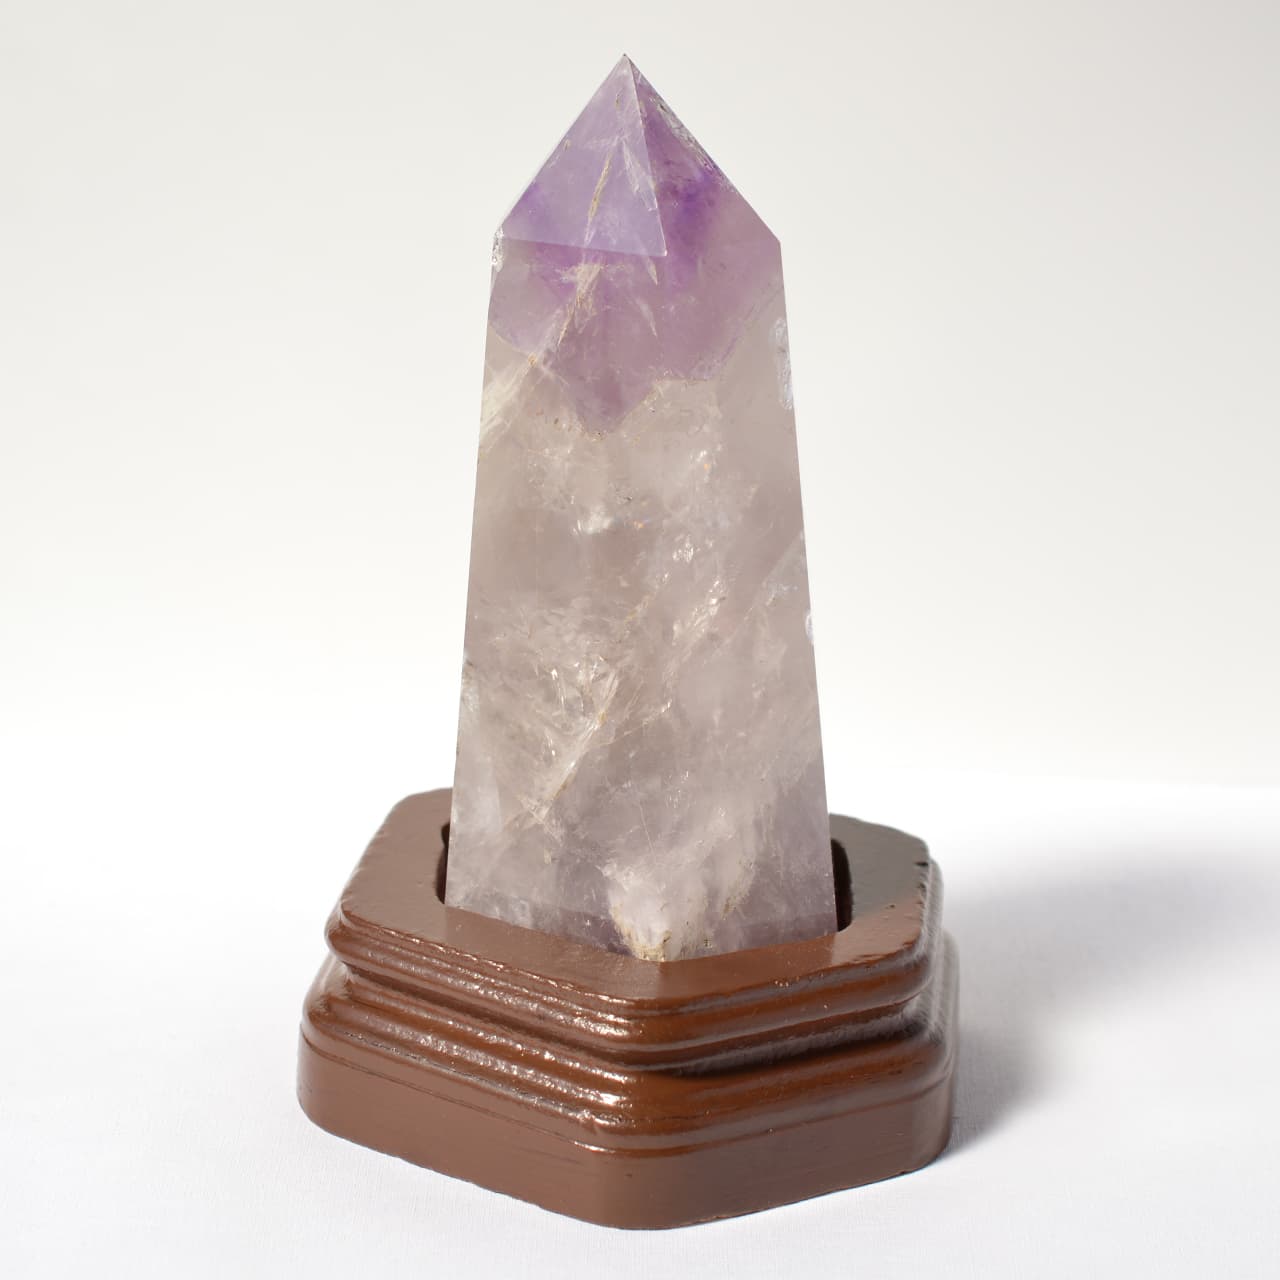 画像1: アメジスト(紫水晶)ポイント六角柱 - 約16cm【台座付】 (1)